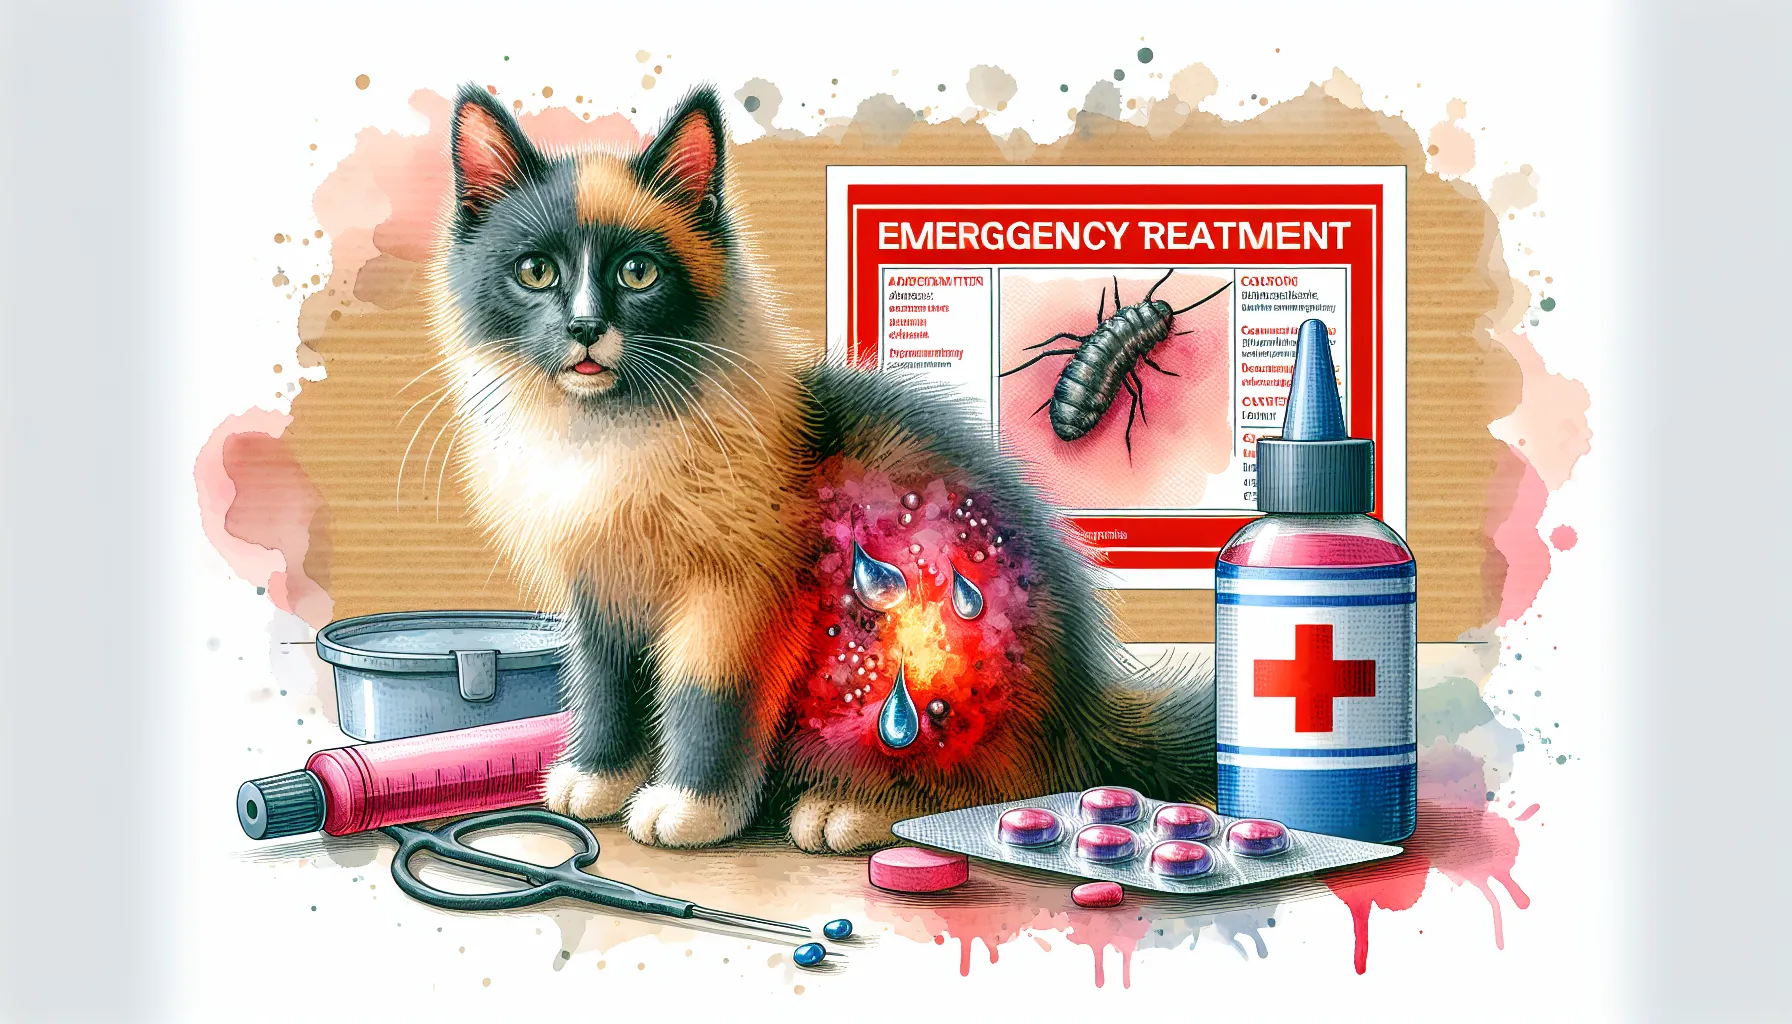 ## 4. 緊急対応：猫の「ノミ水ぶくれ」への応急処置
のAIイメージ画像